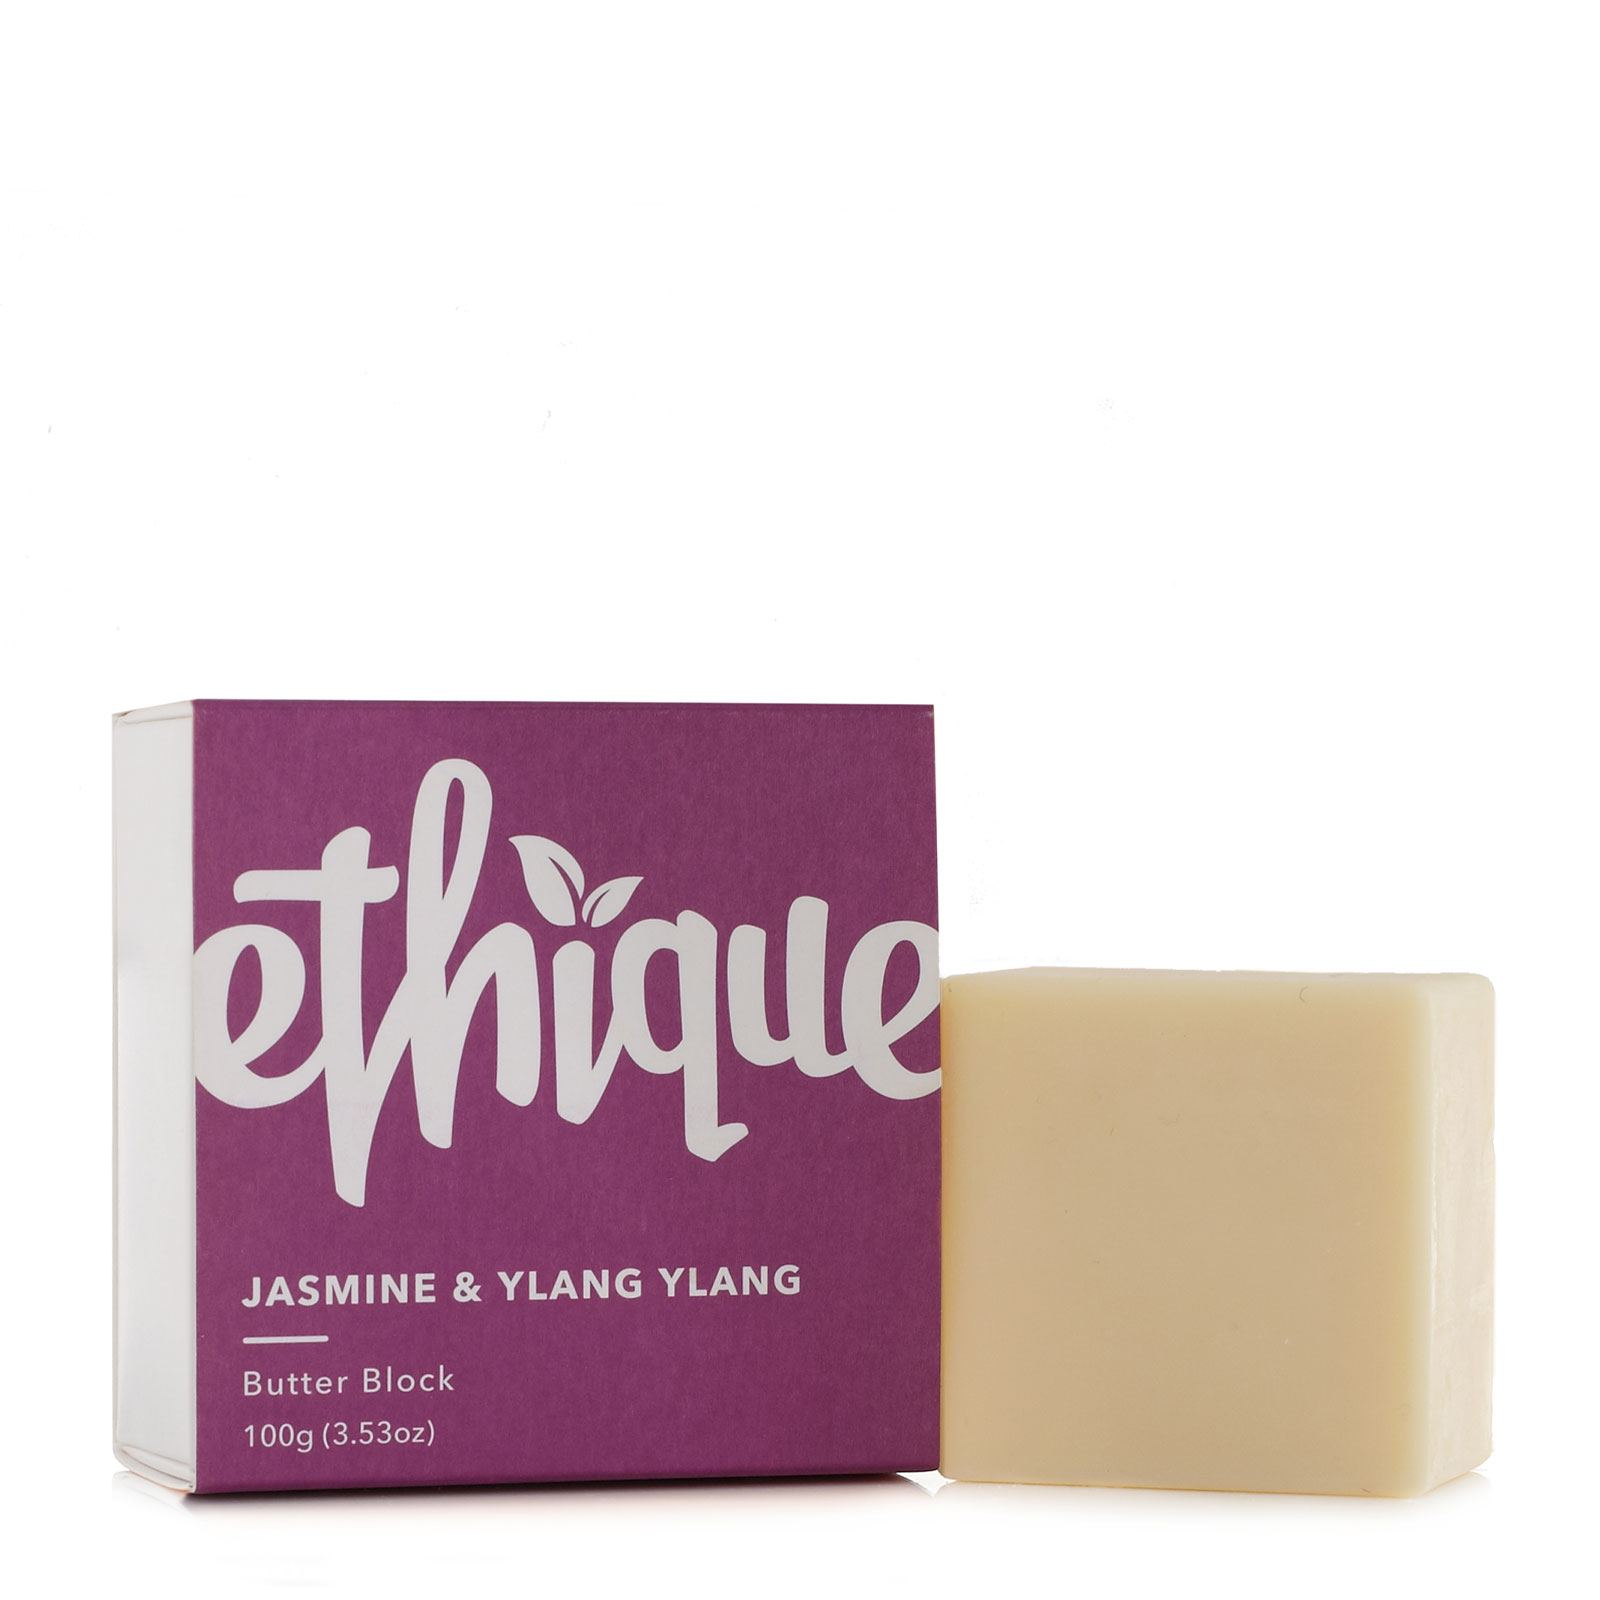 Ethique Jasmine & Ylang Ylang Butter Block 100g